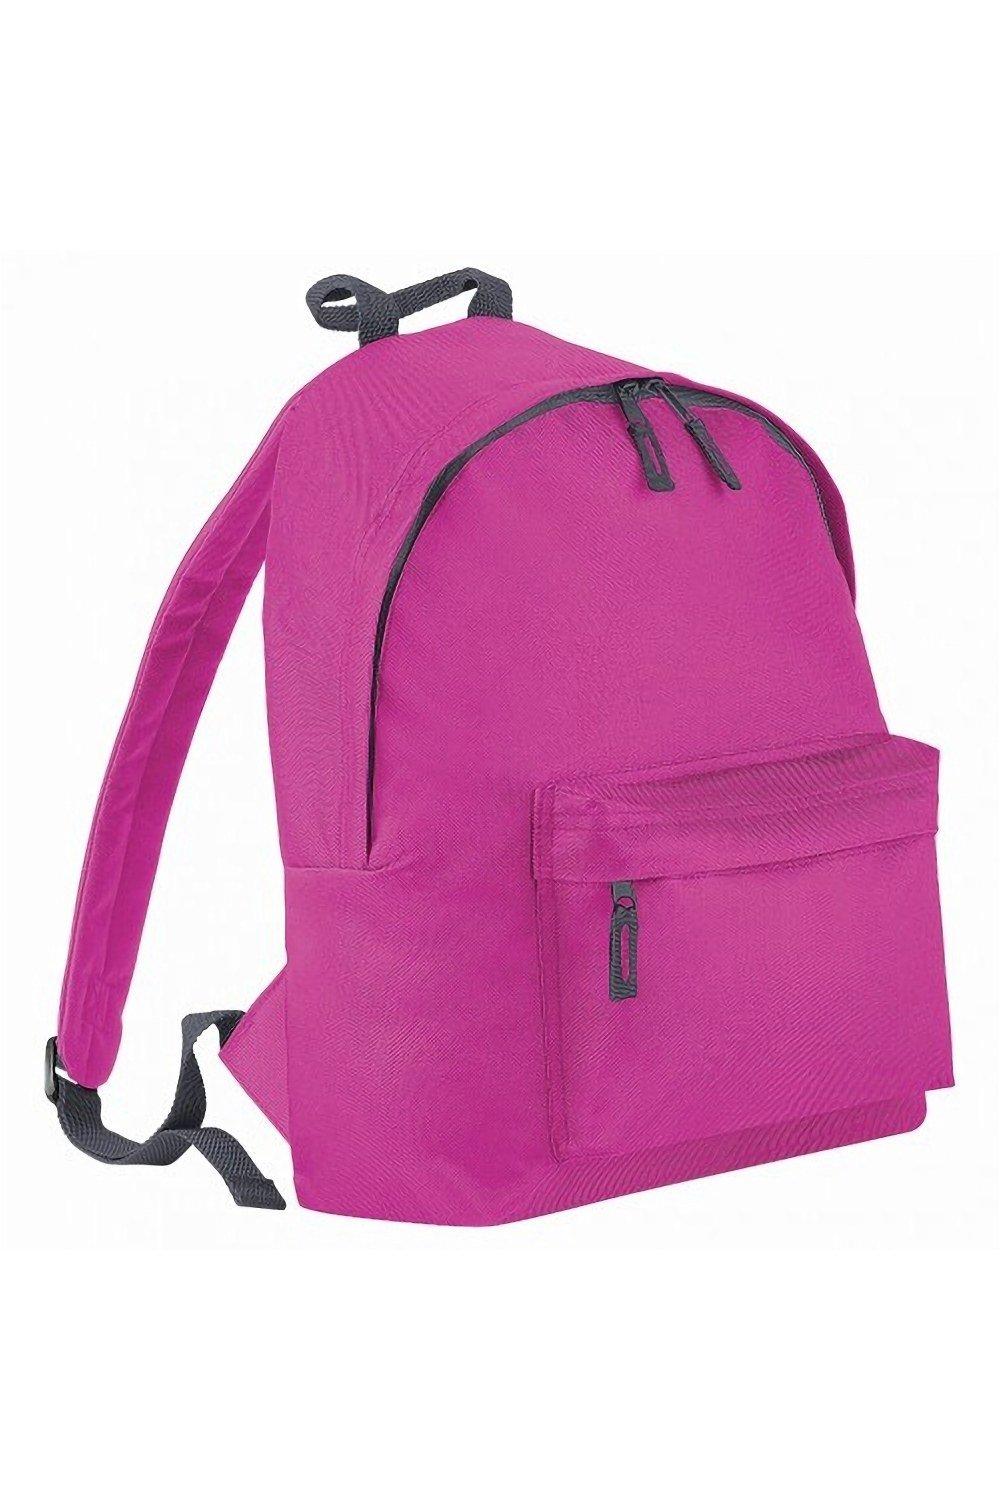 яр 19 весенний венок электронная схема Модный рюкзак / рюкзак (14 литров) Bagbase, розовый